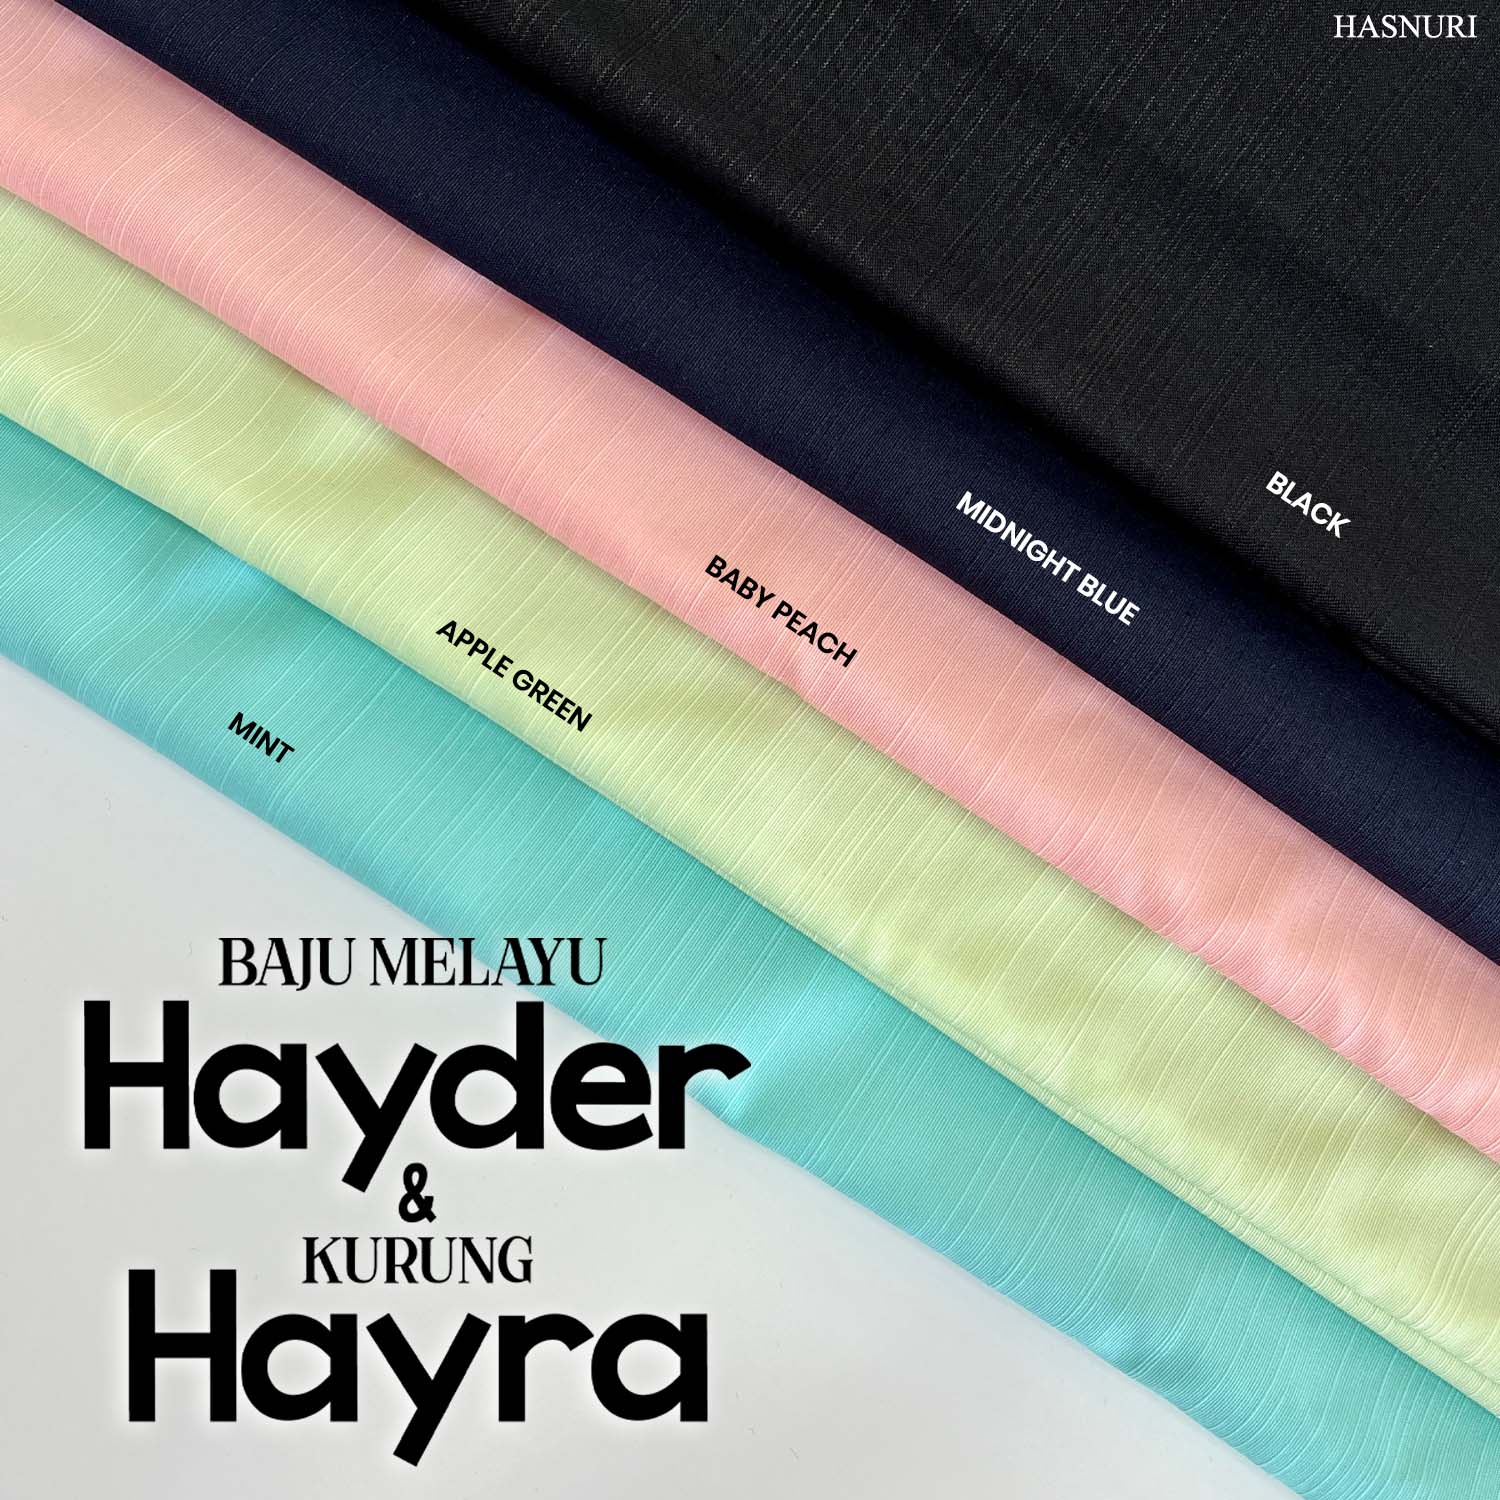 Baju Melayu Hayder - Black